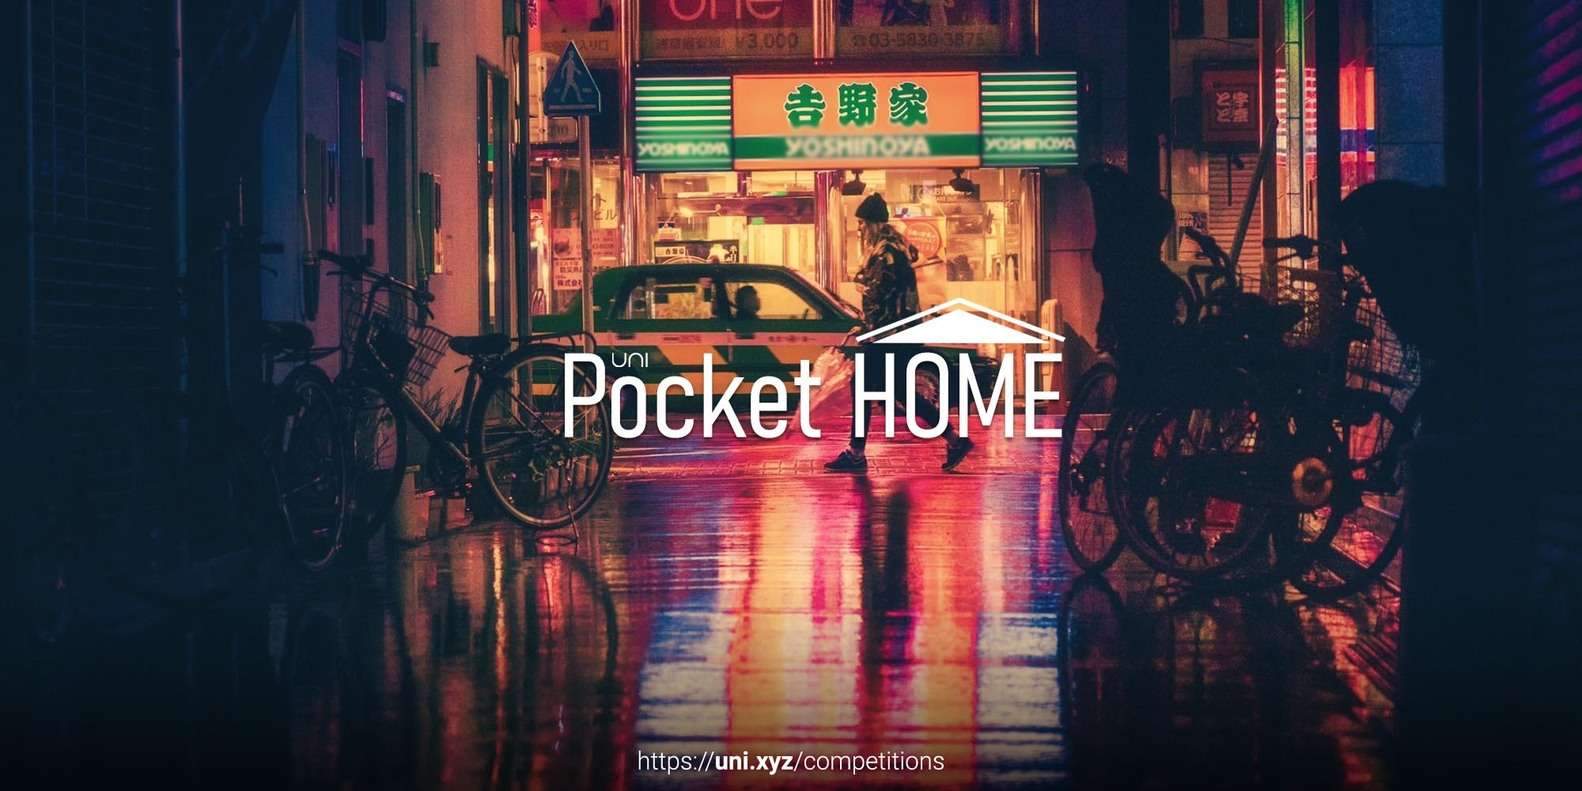 Pocket Home – A tiny abode amidst the dense concrete jungle